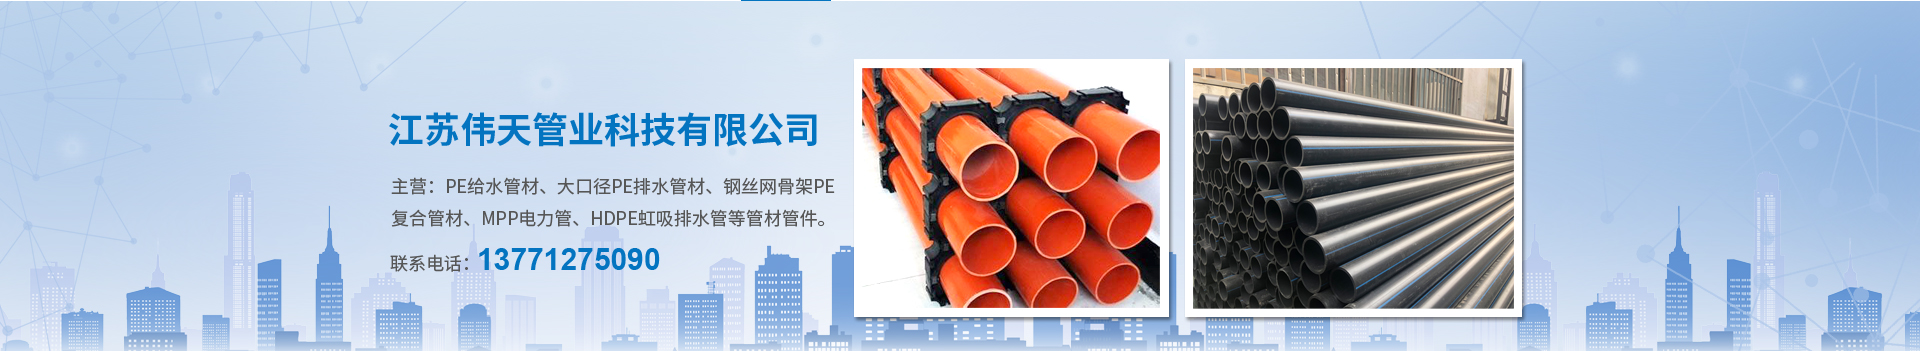 热熔管件-江苏伟天管业科技有限公司